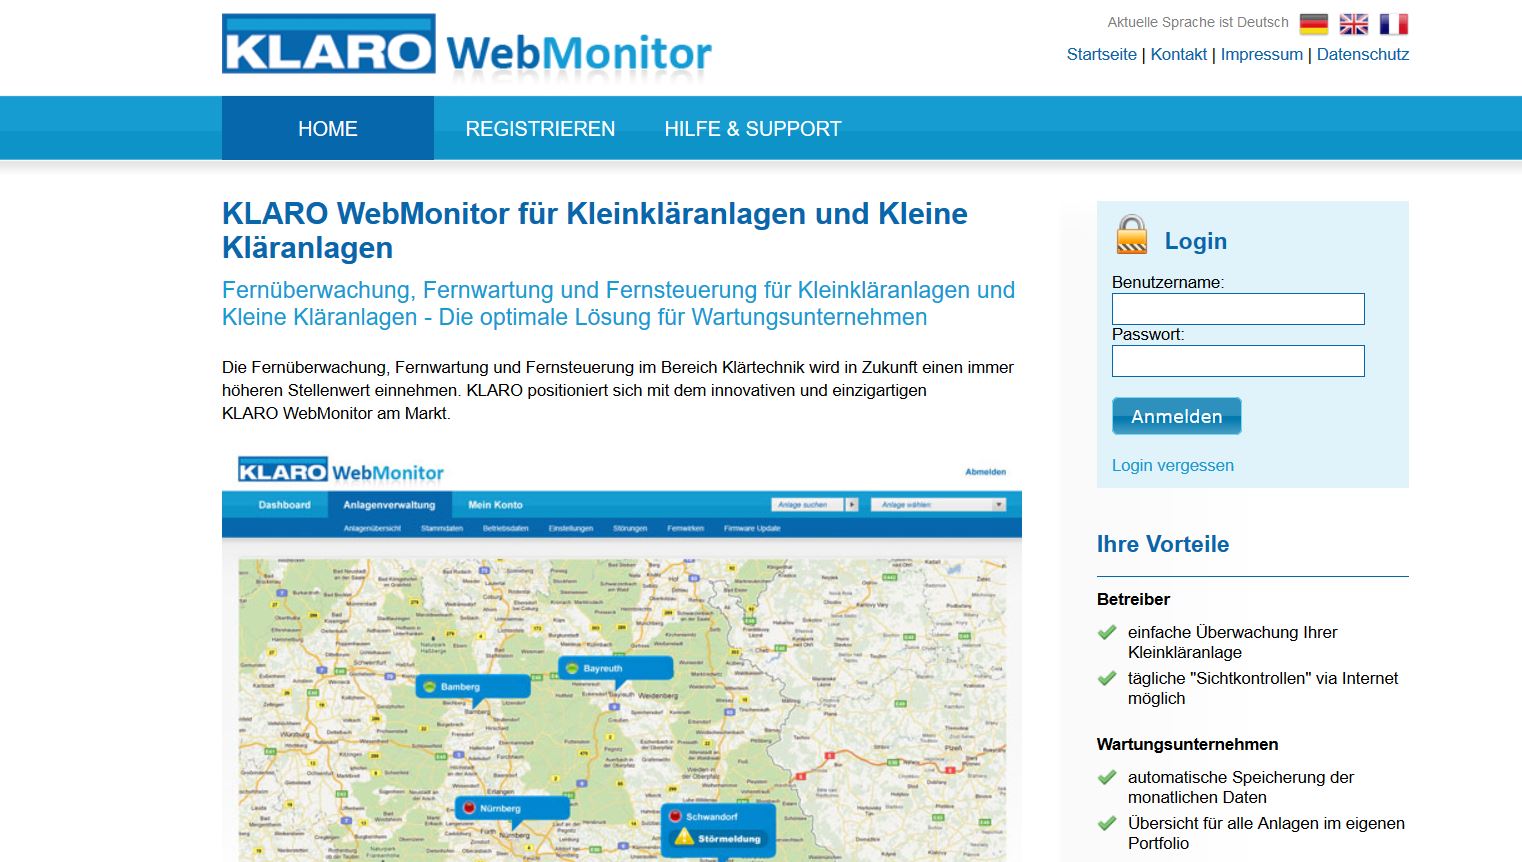 KLARO WebMonitor